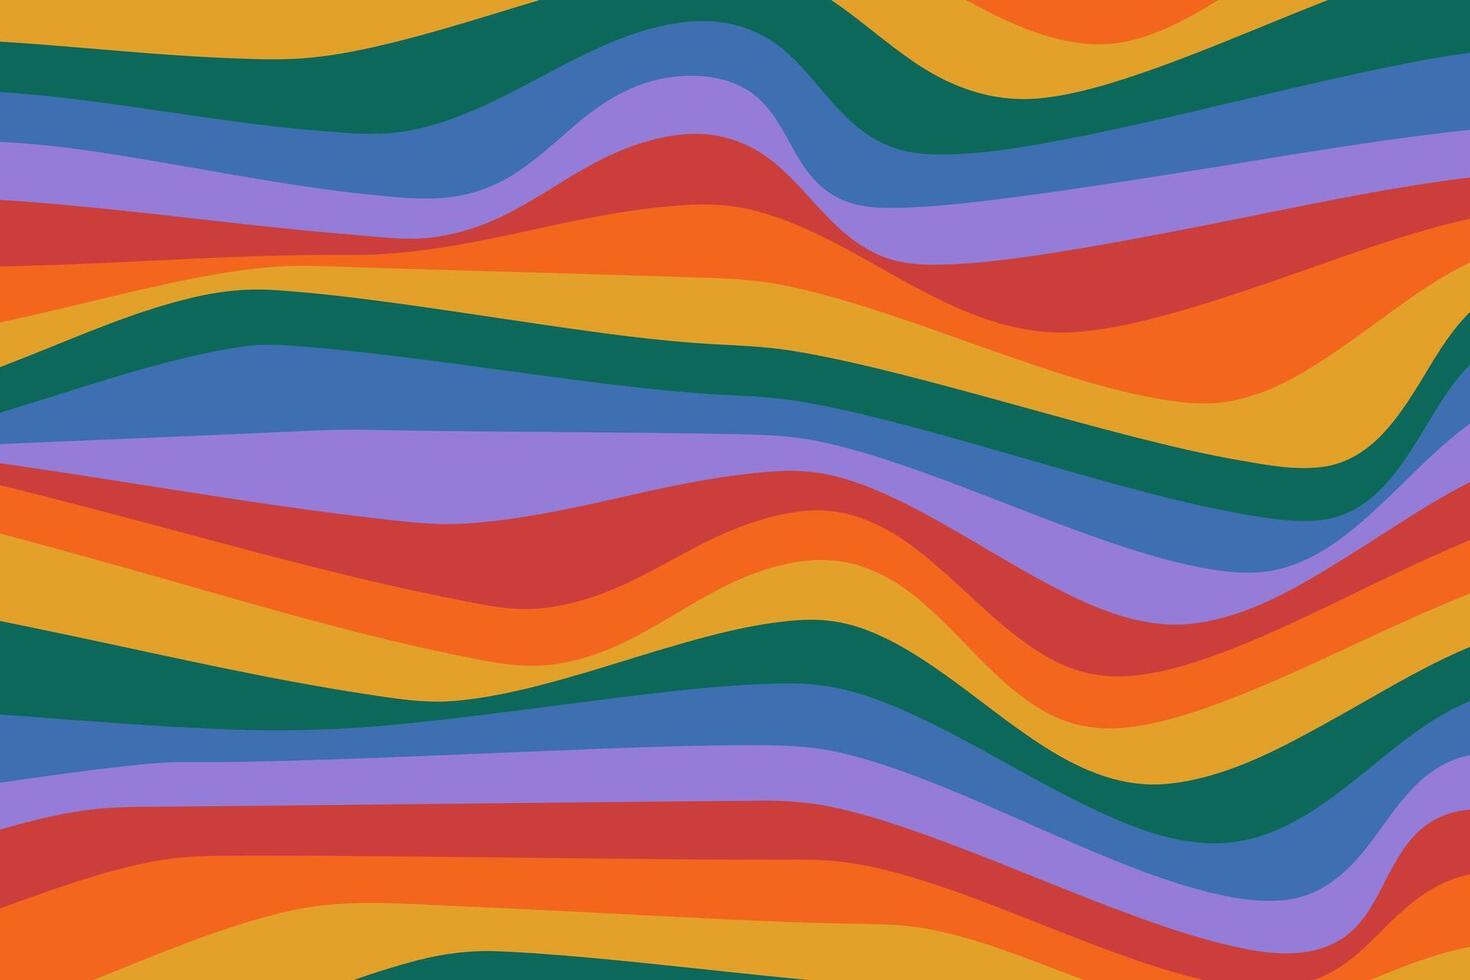 retro abstract achtergrond in regenboog kleuren. kleurrijk groovy ontwerp in jaren 70-80 stijl. psychedelisch golvend patroon vector